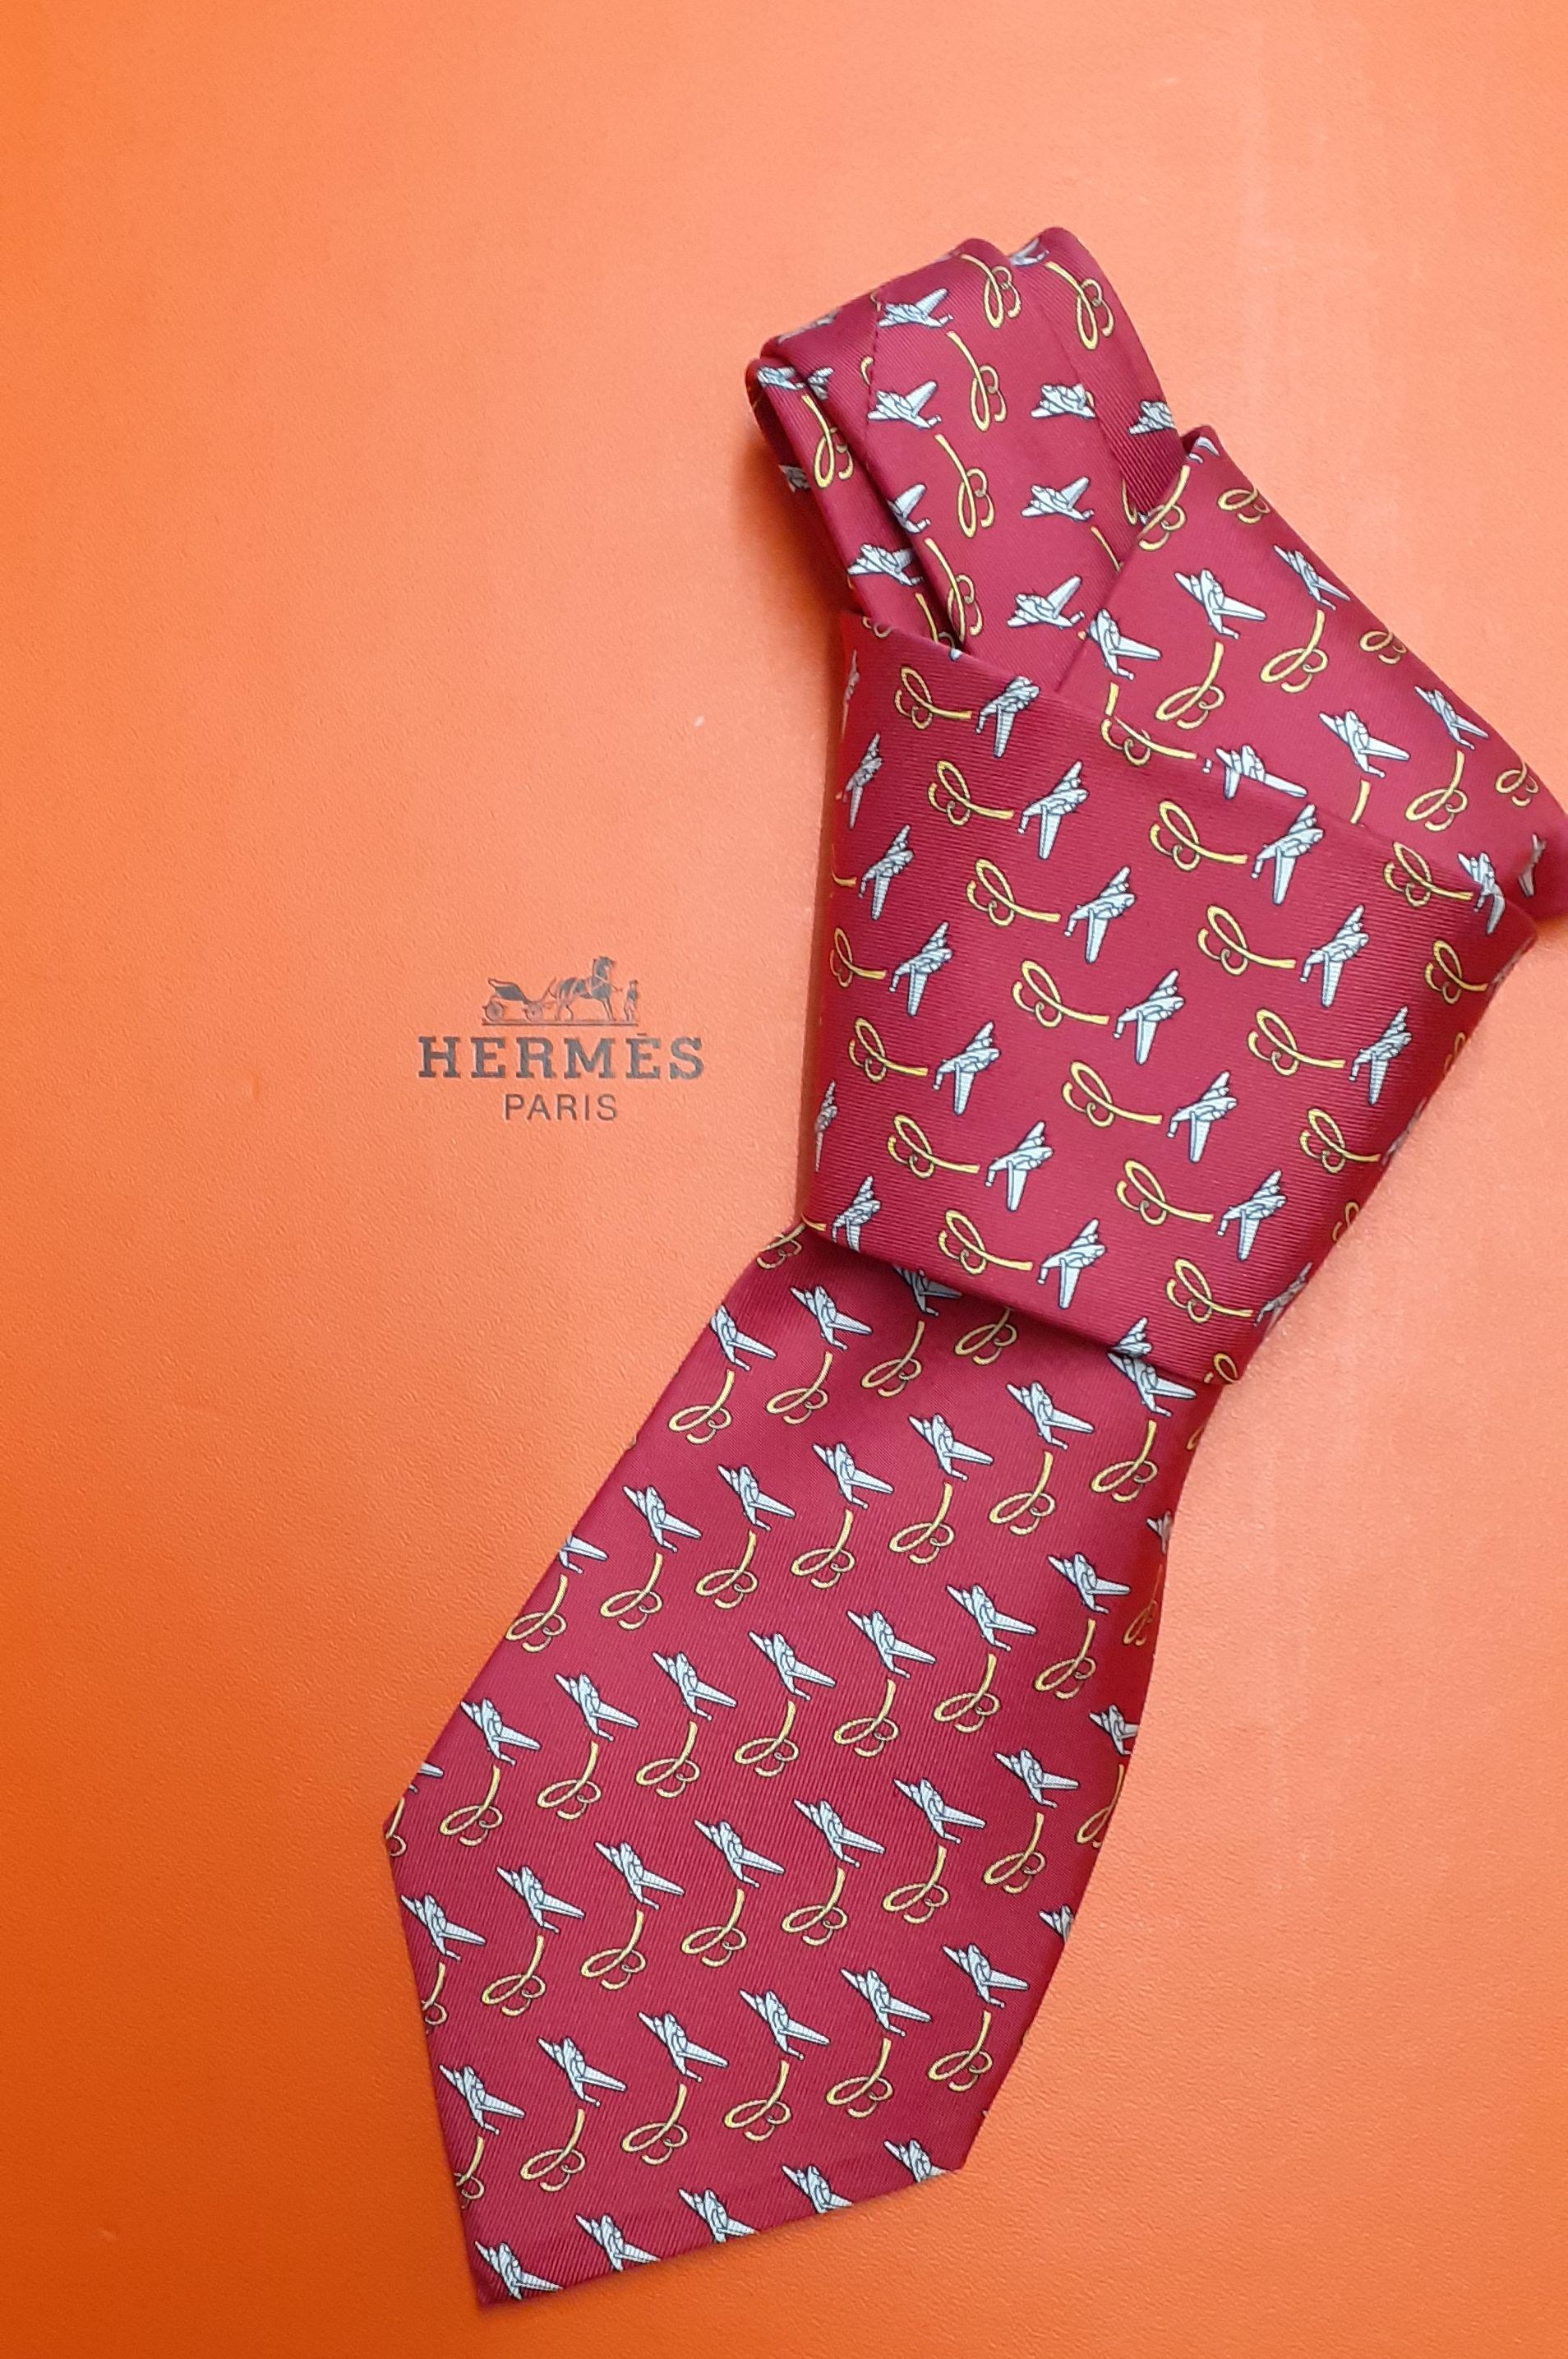 Rare cravate Hermès authentique pour Breitling

Imprimer : Des avions et le 